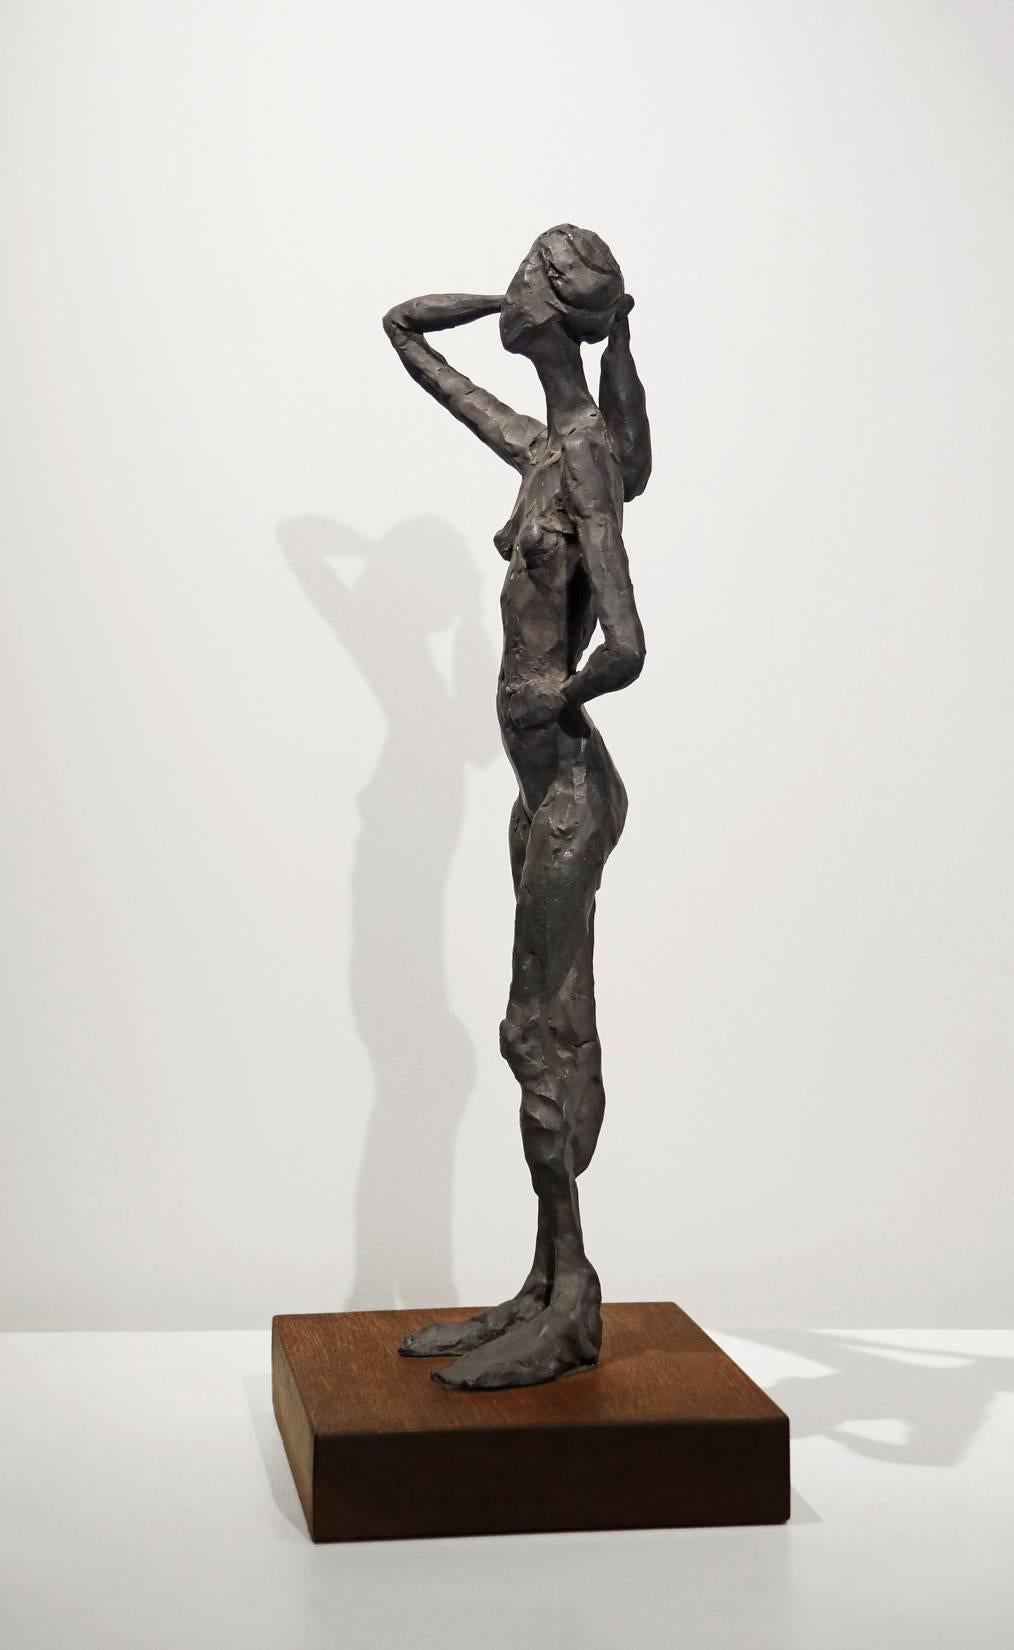 Pamela debout - Contemporain Sculpture par Curt Brill